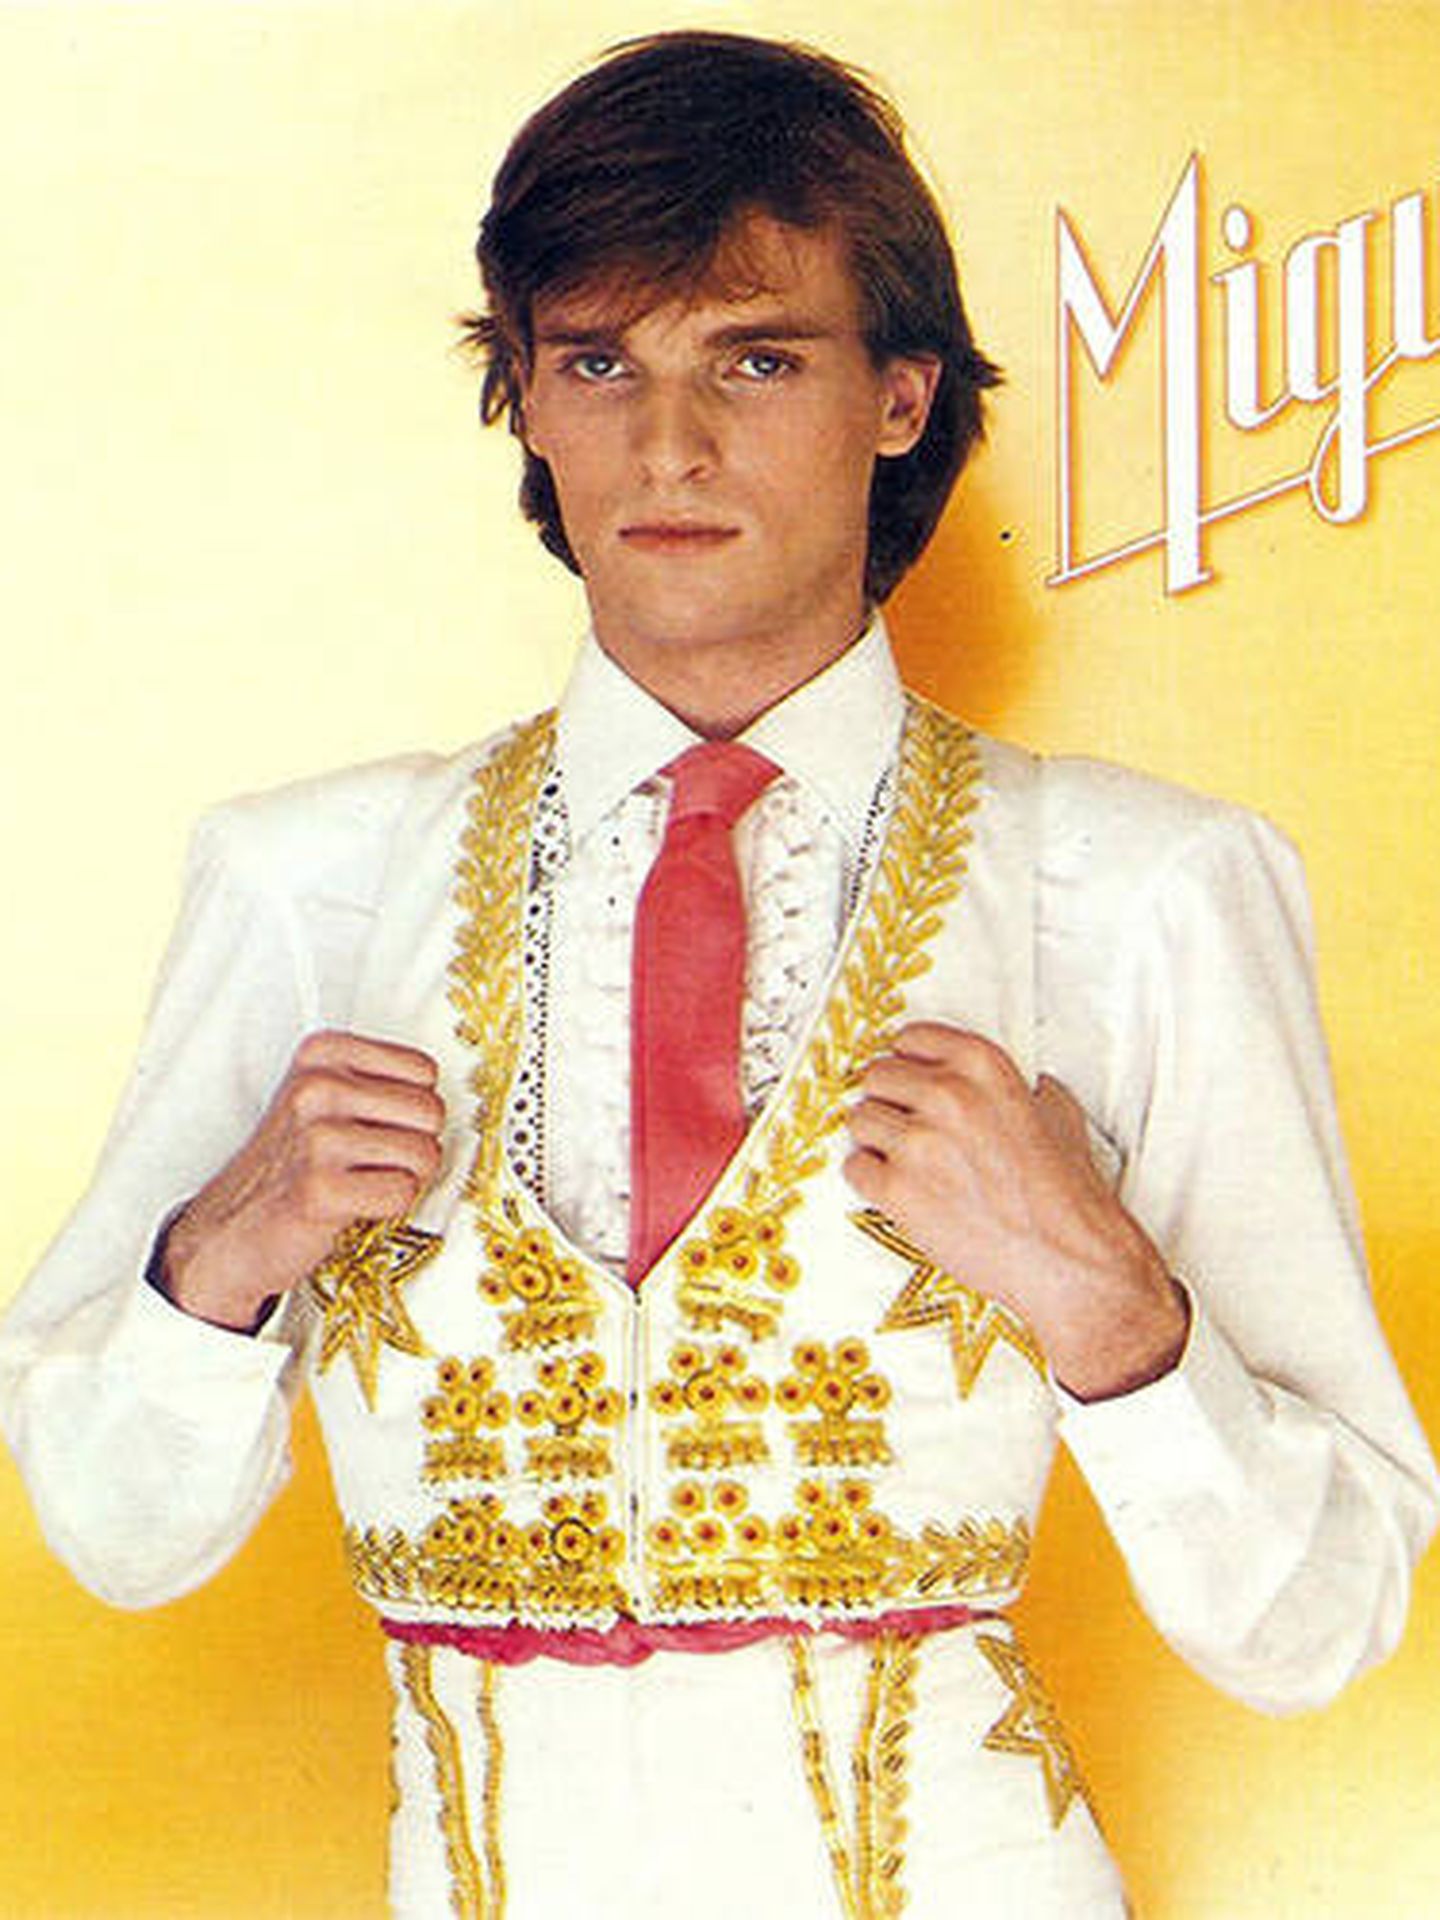 Miguel Bosé, en la portada de su disco 'Miguel'. (Cortesía)